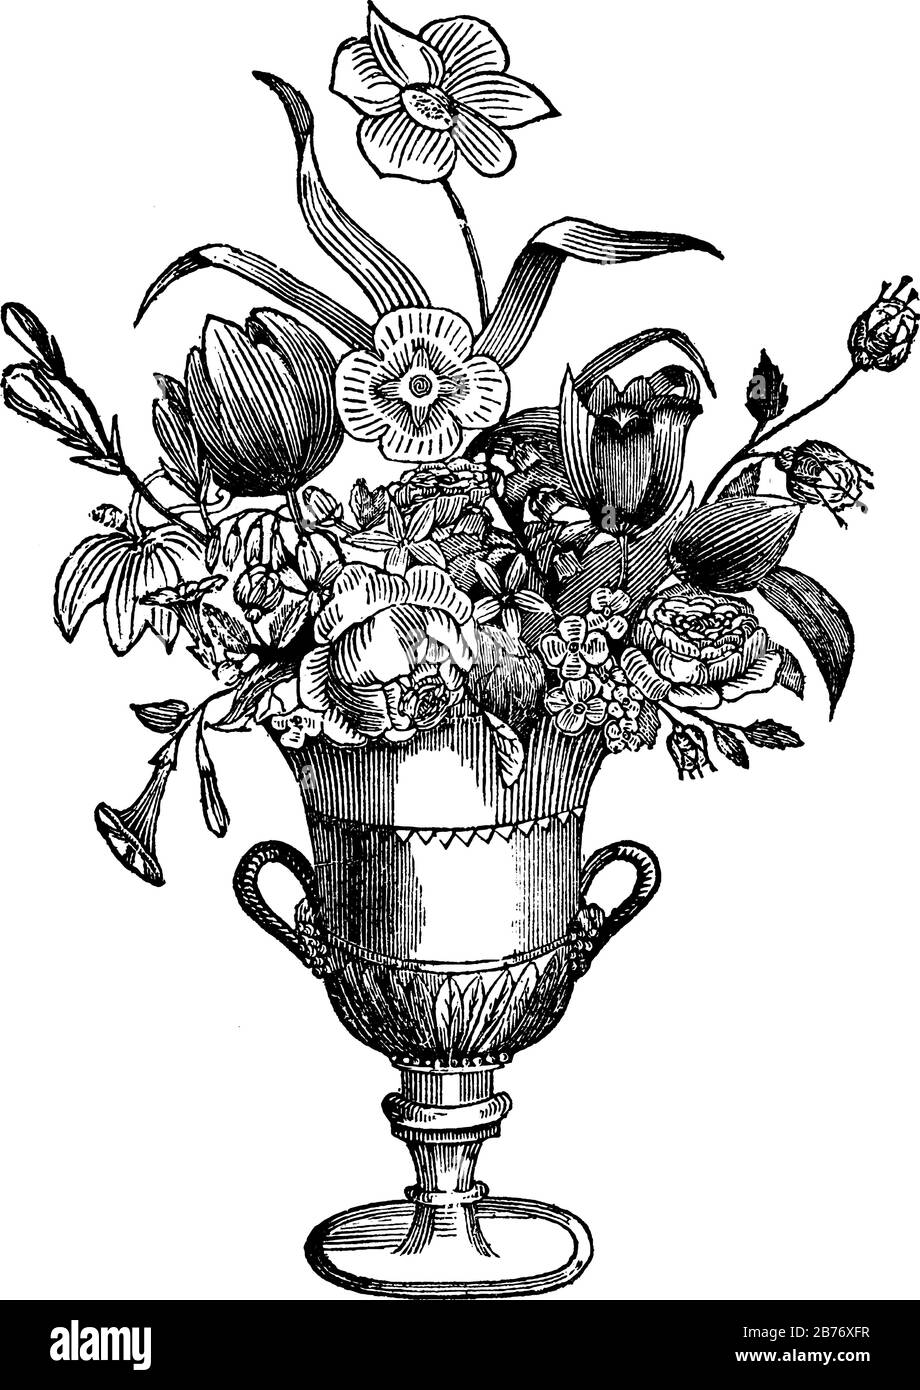 Un contenitore decorativo senza maniglie, tipicamente in vetro o porcellana e utilizzato come ornamento, che mostra fiori recisi, vintage linea disegno o Engr Illustrazione Vettoriale